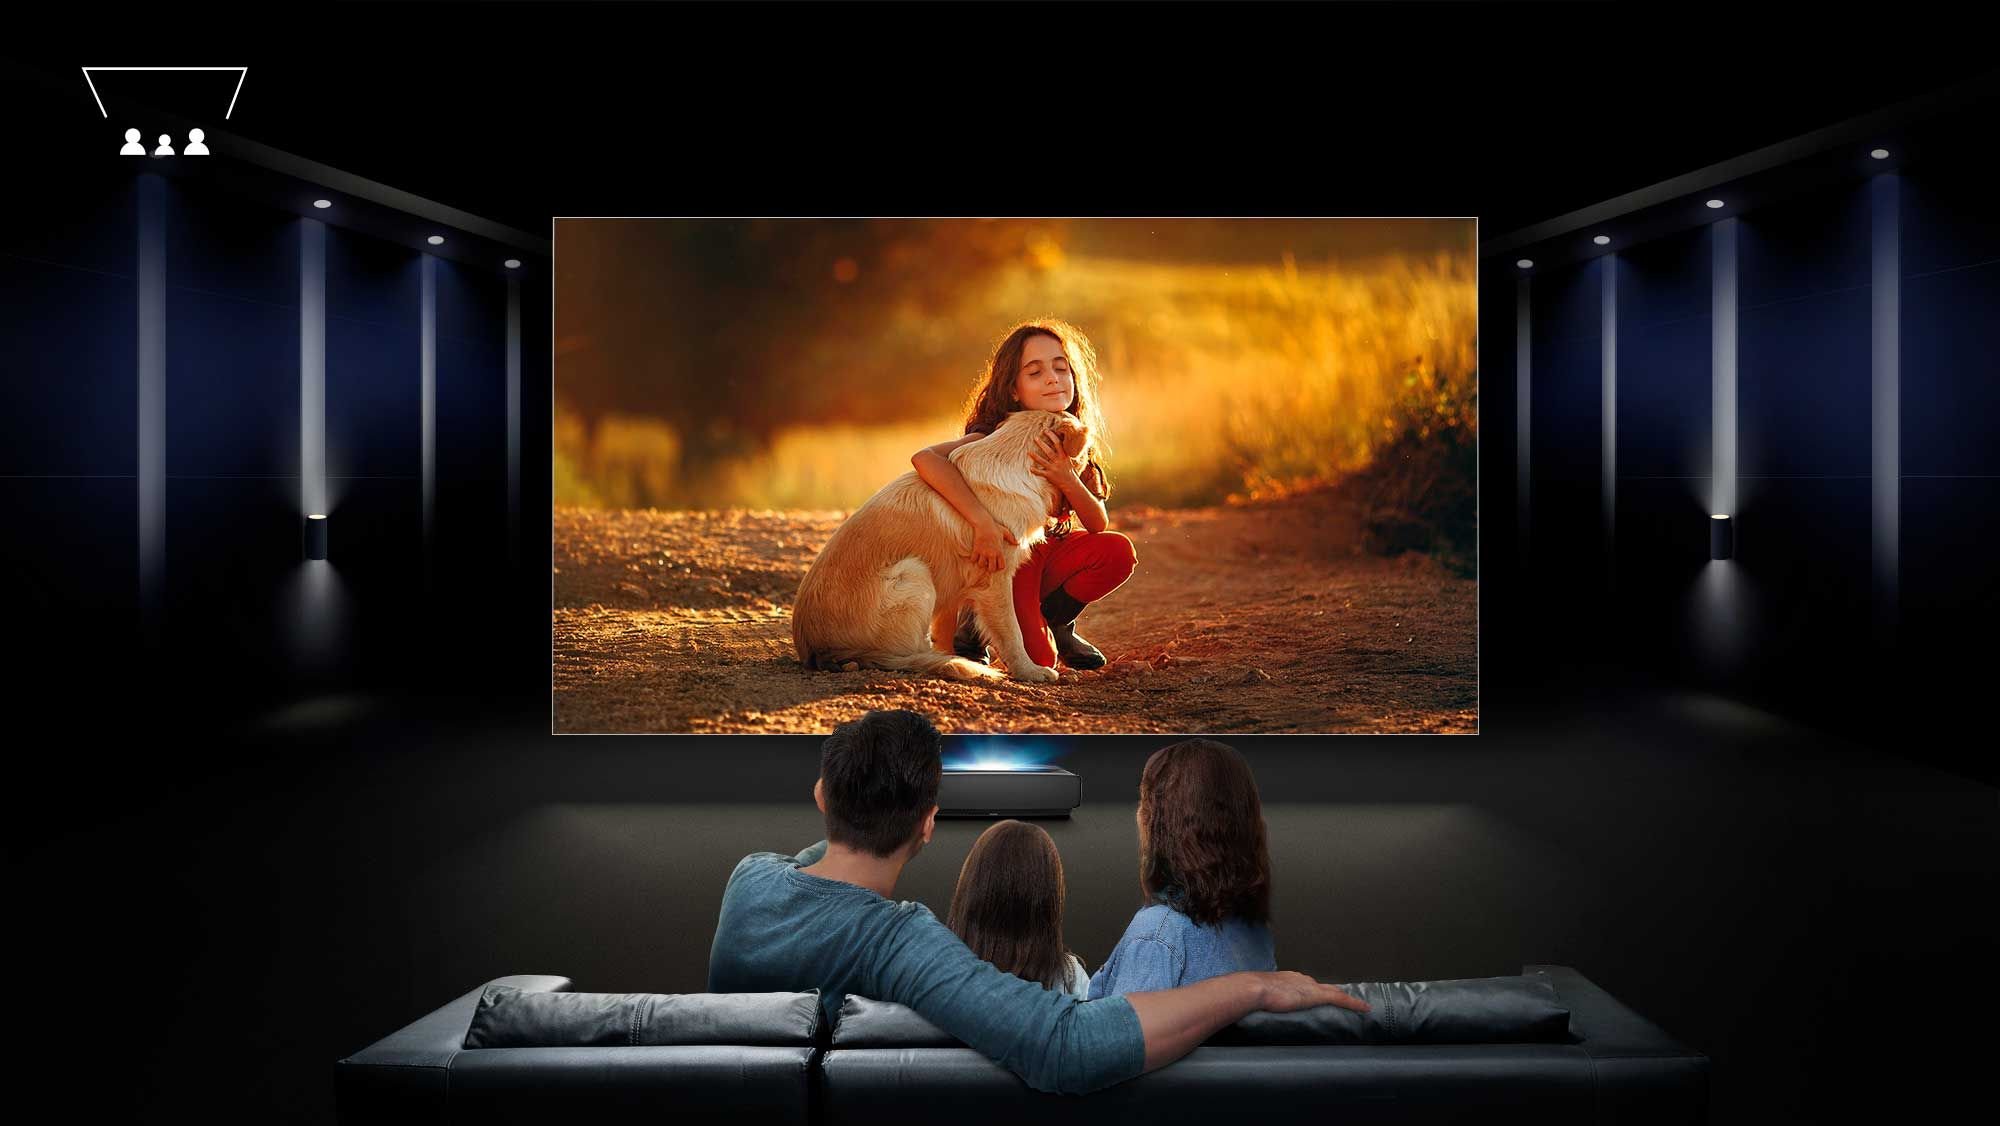 HDR y Dolby Vision: ¿por qué es vital tener una configuración correcta del televisor o proyector?